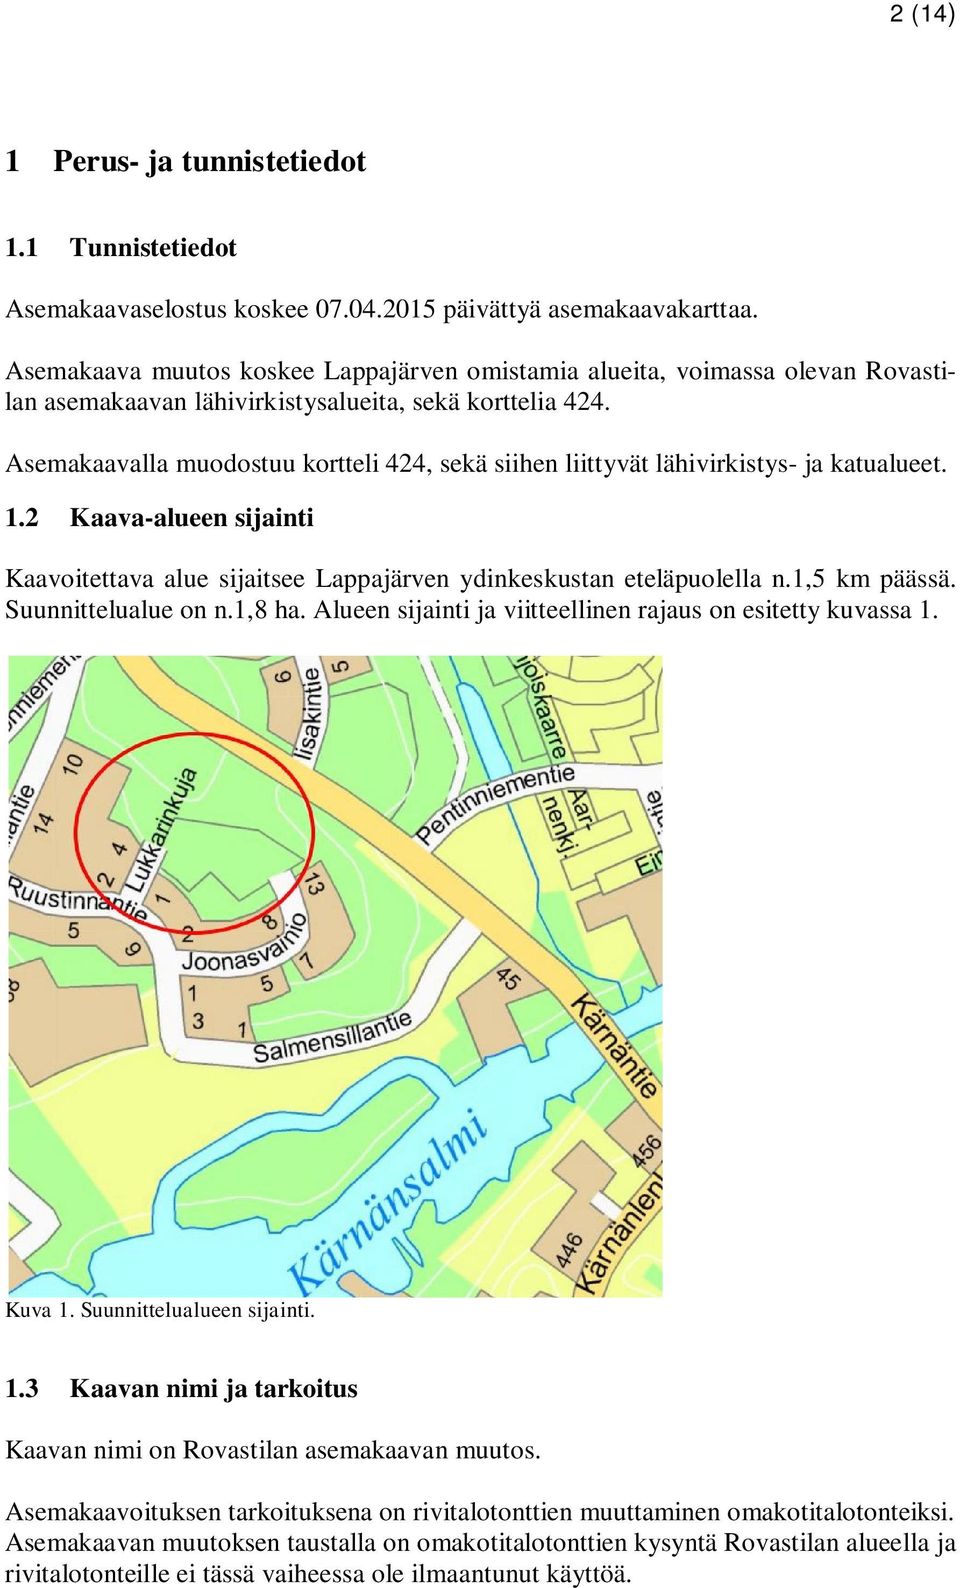 Asemakaavalla muodostuu kortteli 424, sekä siihen liittyvät lähivirkistys- ja katualueet. 1.2 Kaava-alueen sijainti Kaavoitettava alue sijaitsee Lappajärven ydinkeskustan eteläpuolella n.